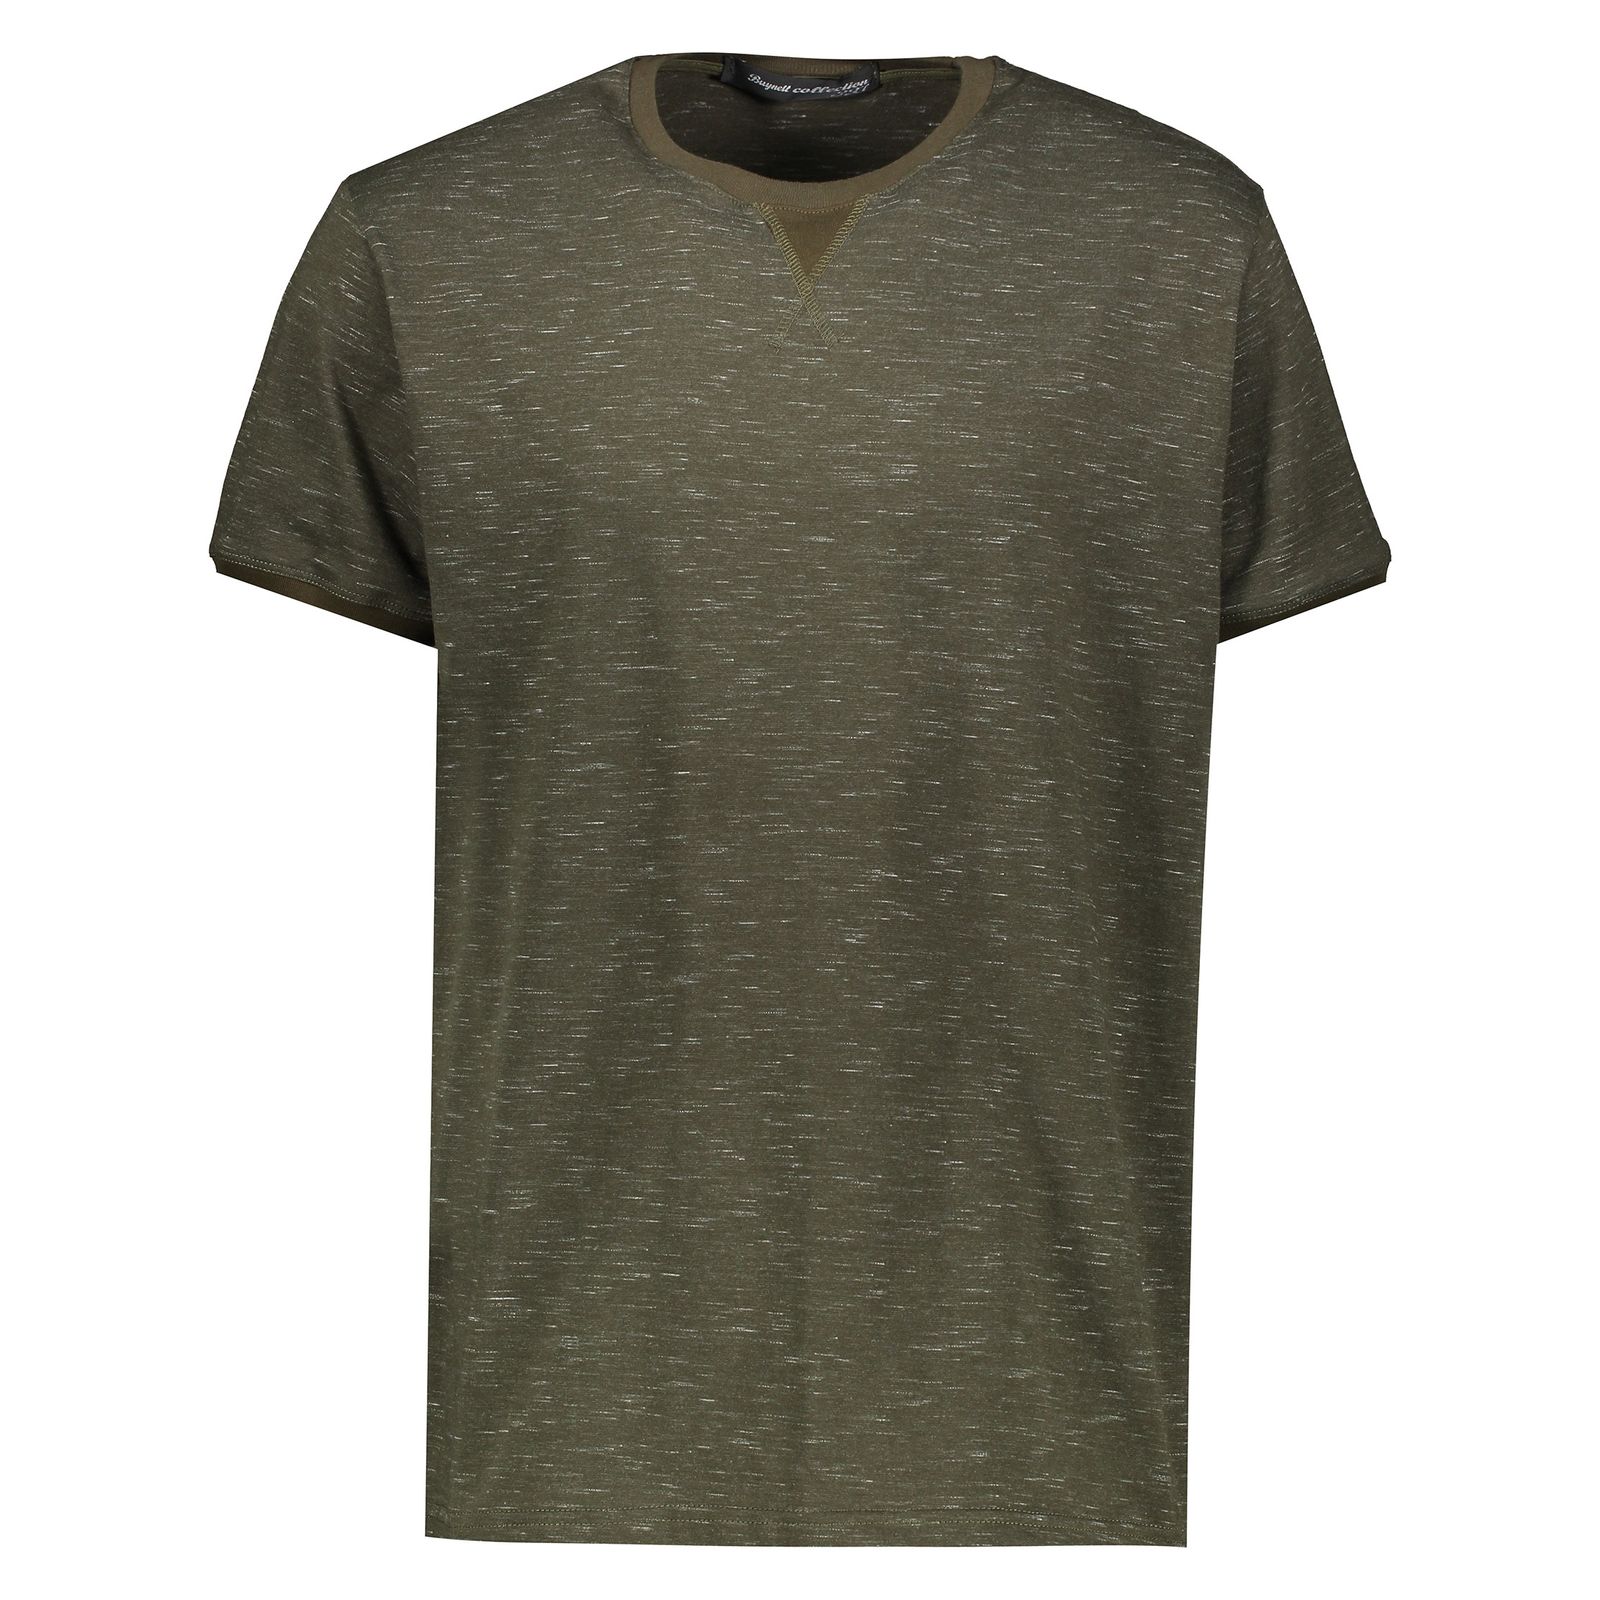 تی شرت آستین کوتاه مردانه باینت کد btt 295-2 -  - 1